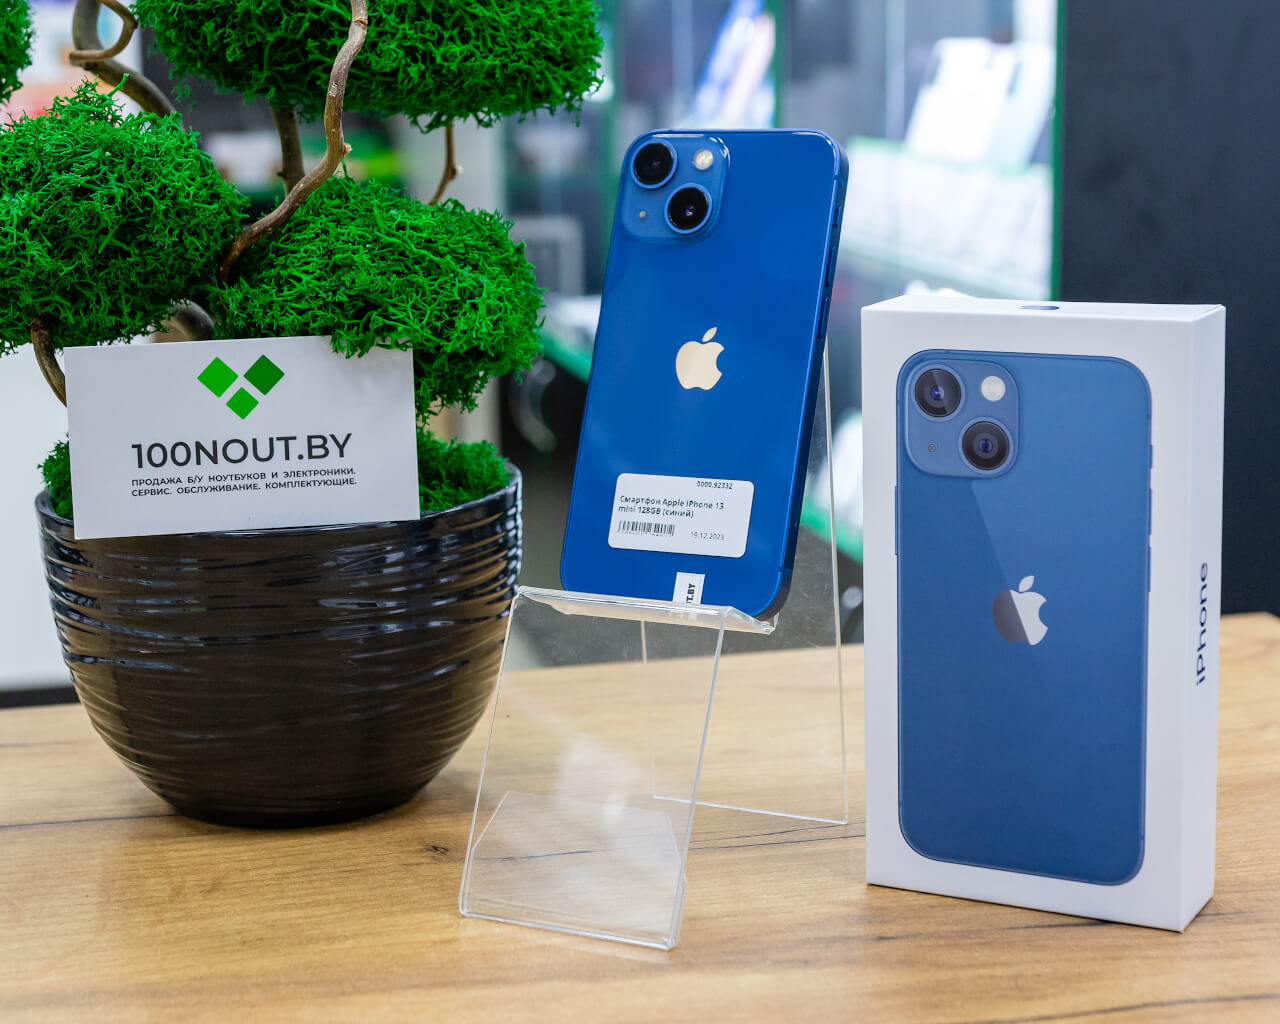 Смартфон Apple iPhone 13 mini 128GB (синий) б/у купить недорого в Минске -  100NOUT